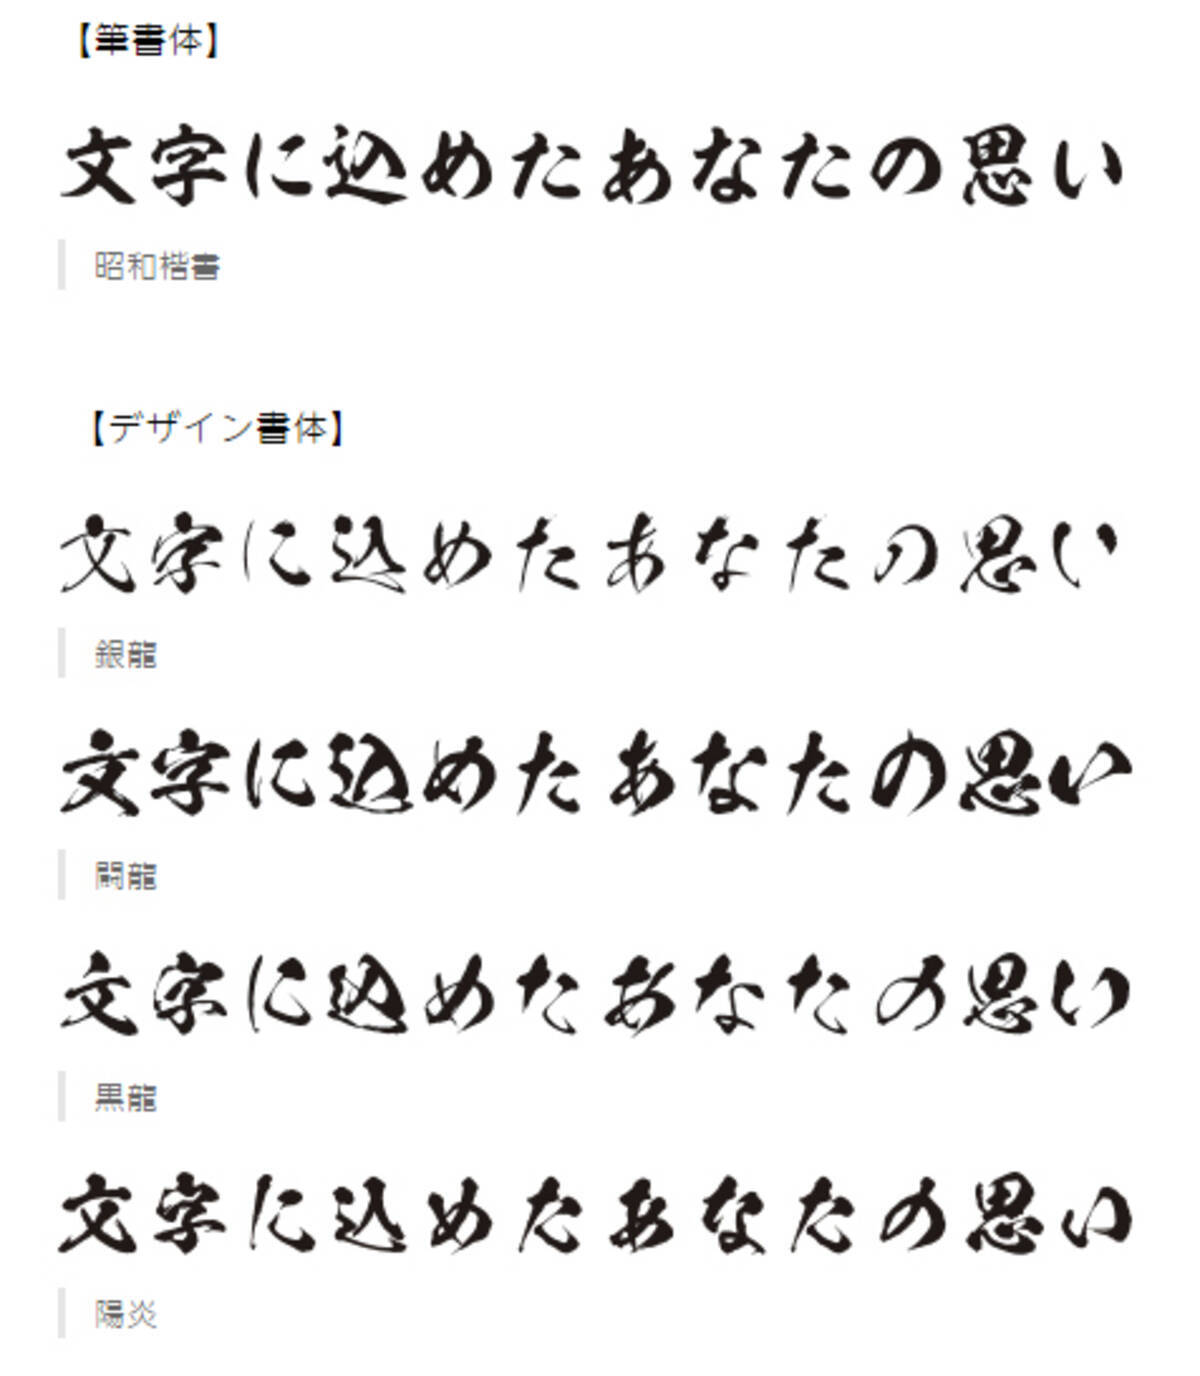 モリサワが昭和書体フォント5書体を提供開始 毛筆の大胆な かすれ を表現 16年7月5日 エキサイトニュース